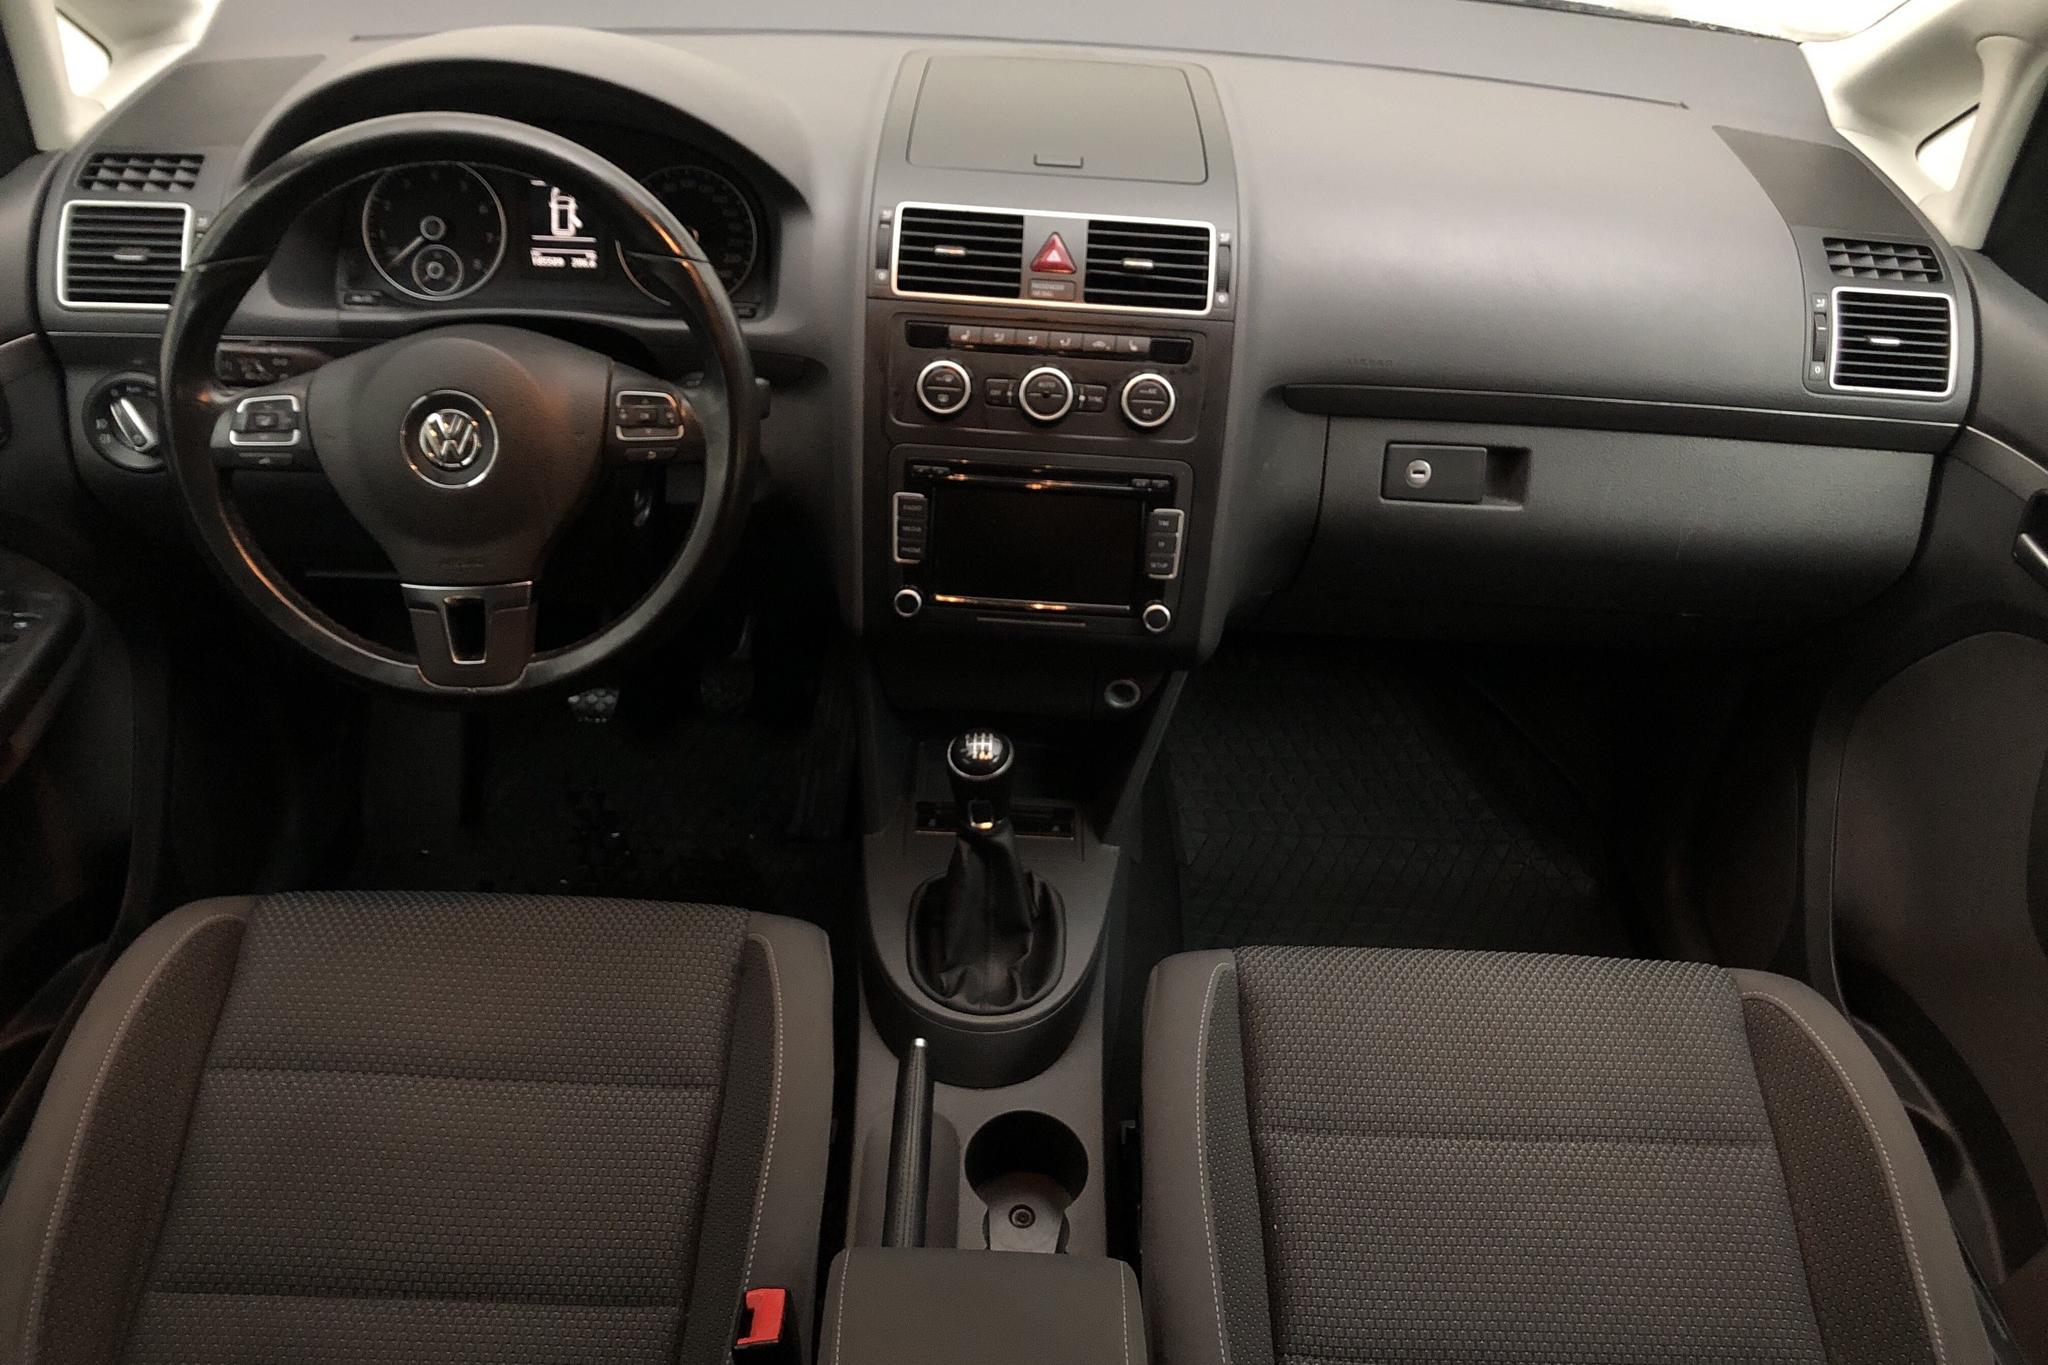 VW Touran 1.4 TSI (140hk) - 185 510 km - Manual - white - 2015